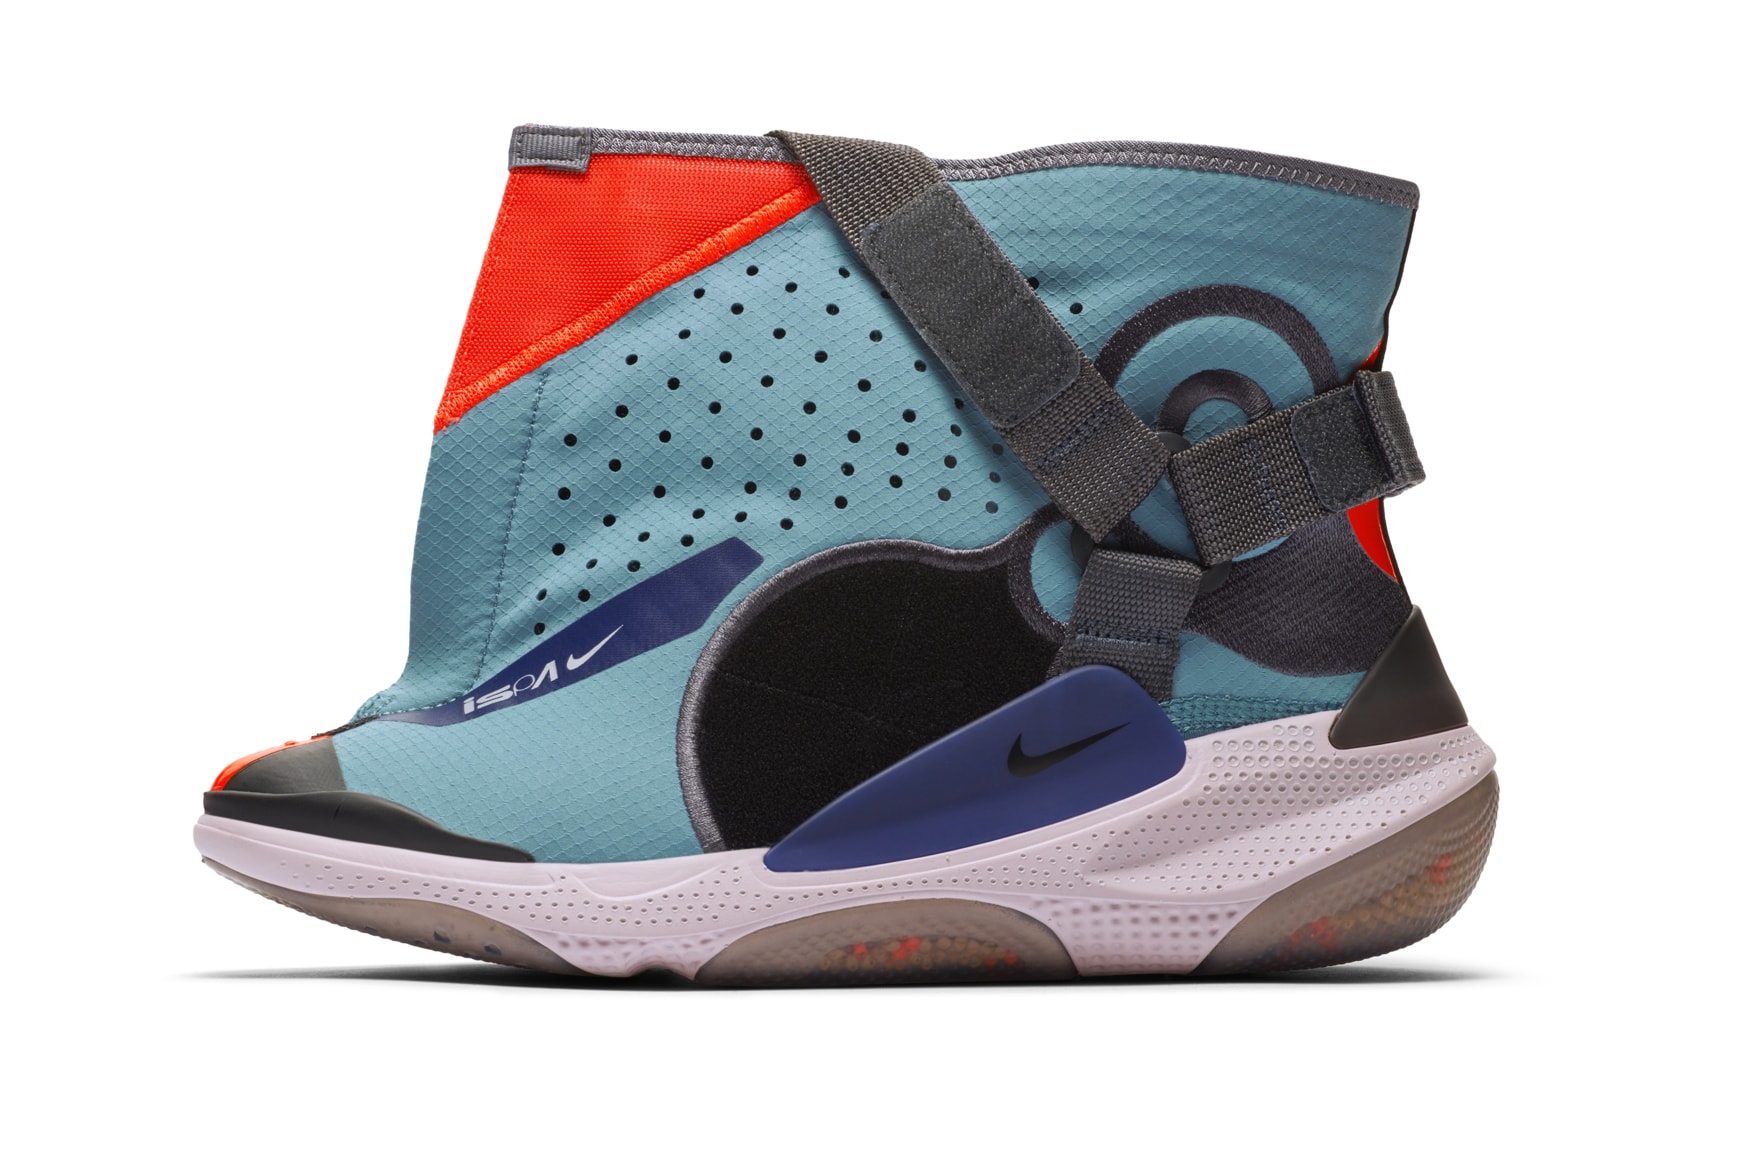 Nike ISPA Joyride Envelope release information black blue sneakers footwear 